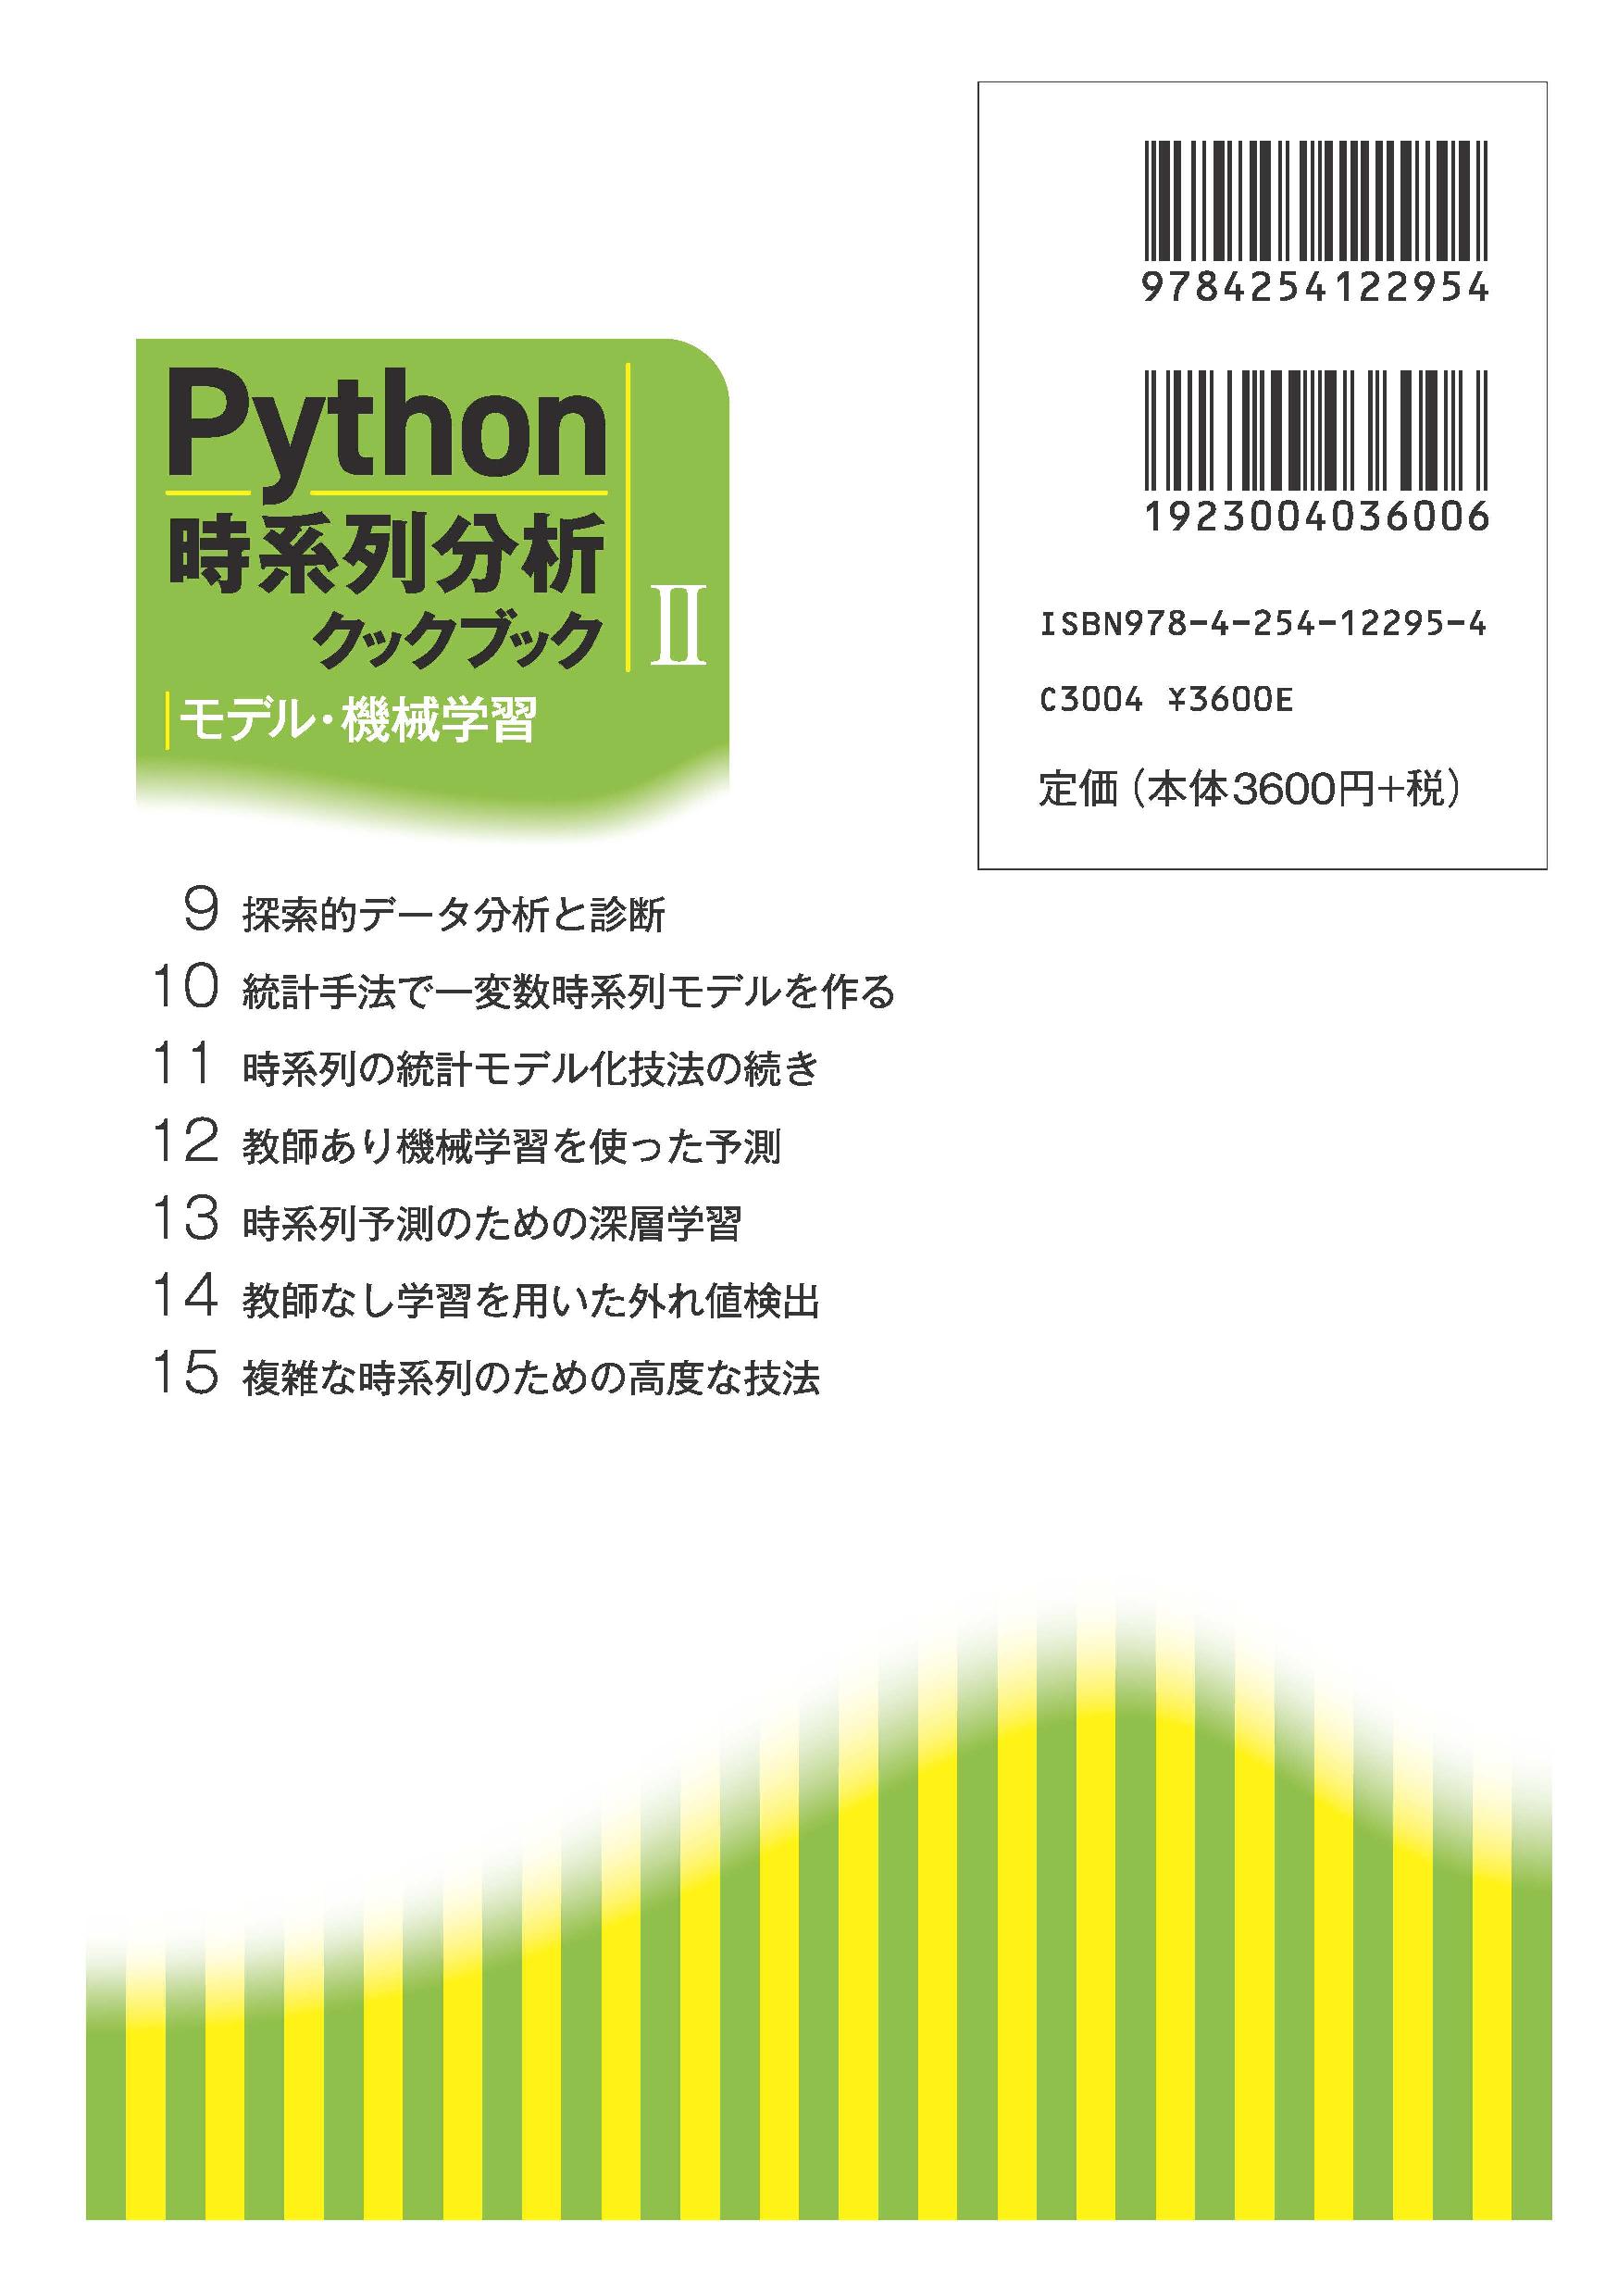 写真 : Python時系列分析クックブック II 